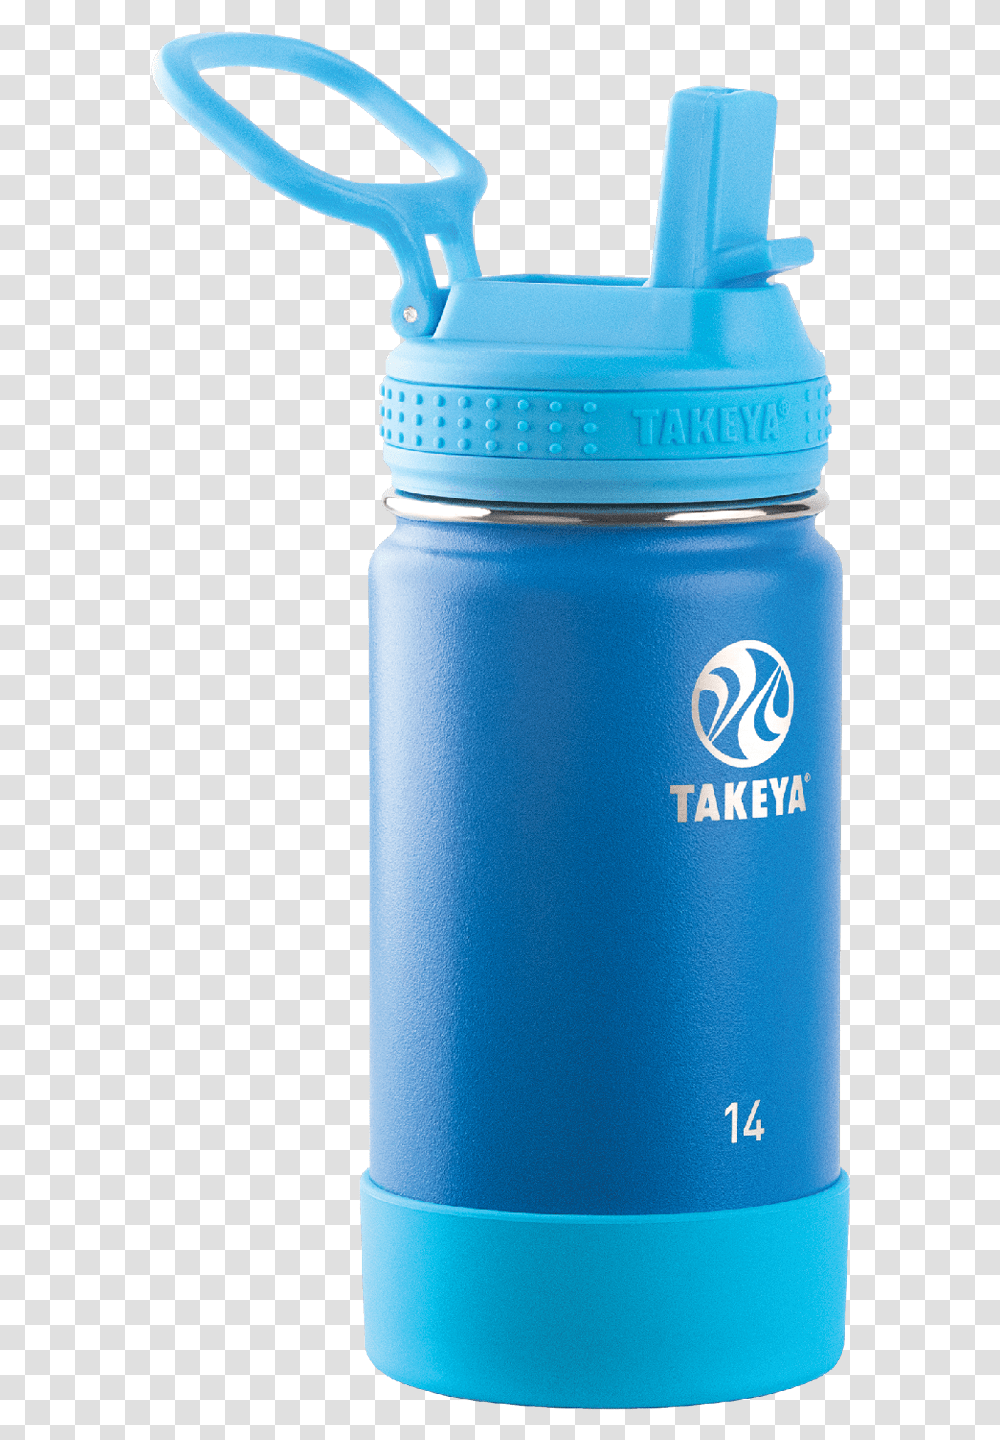 Takeya Actives Kids Stainless Steel Water Bottle Wstraw Takeya Water Bottle Pink, Shaker, Milk, Beverage, Drink Transparent Png